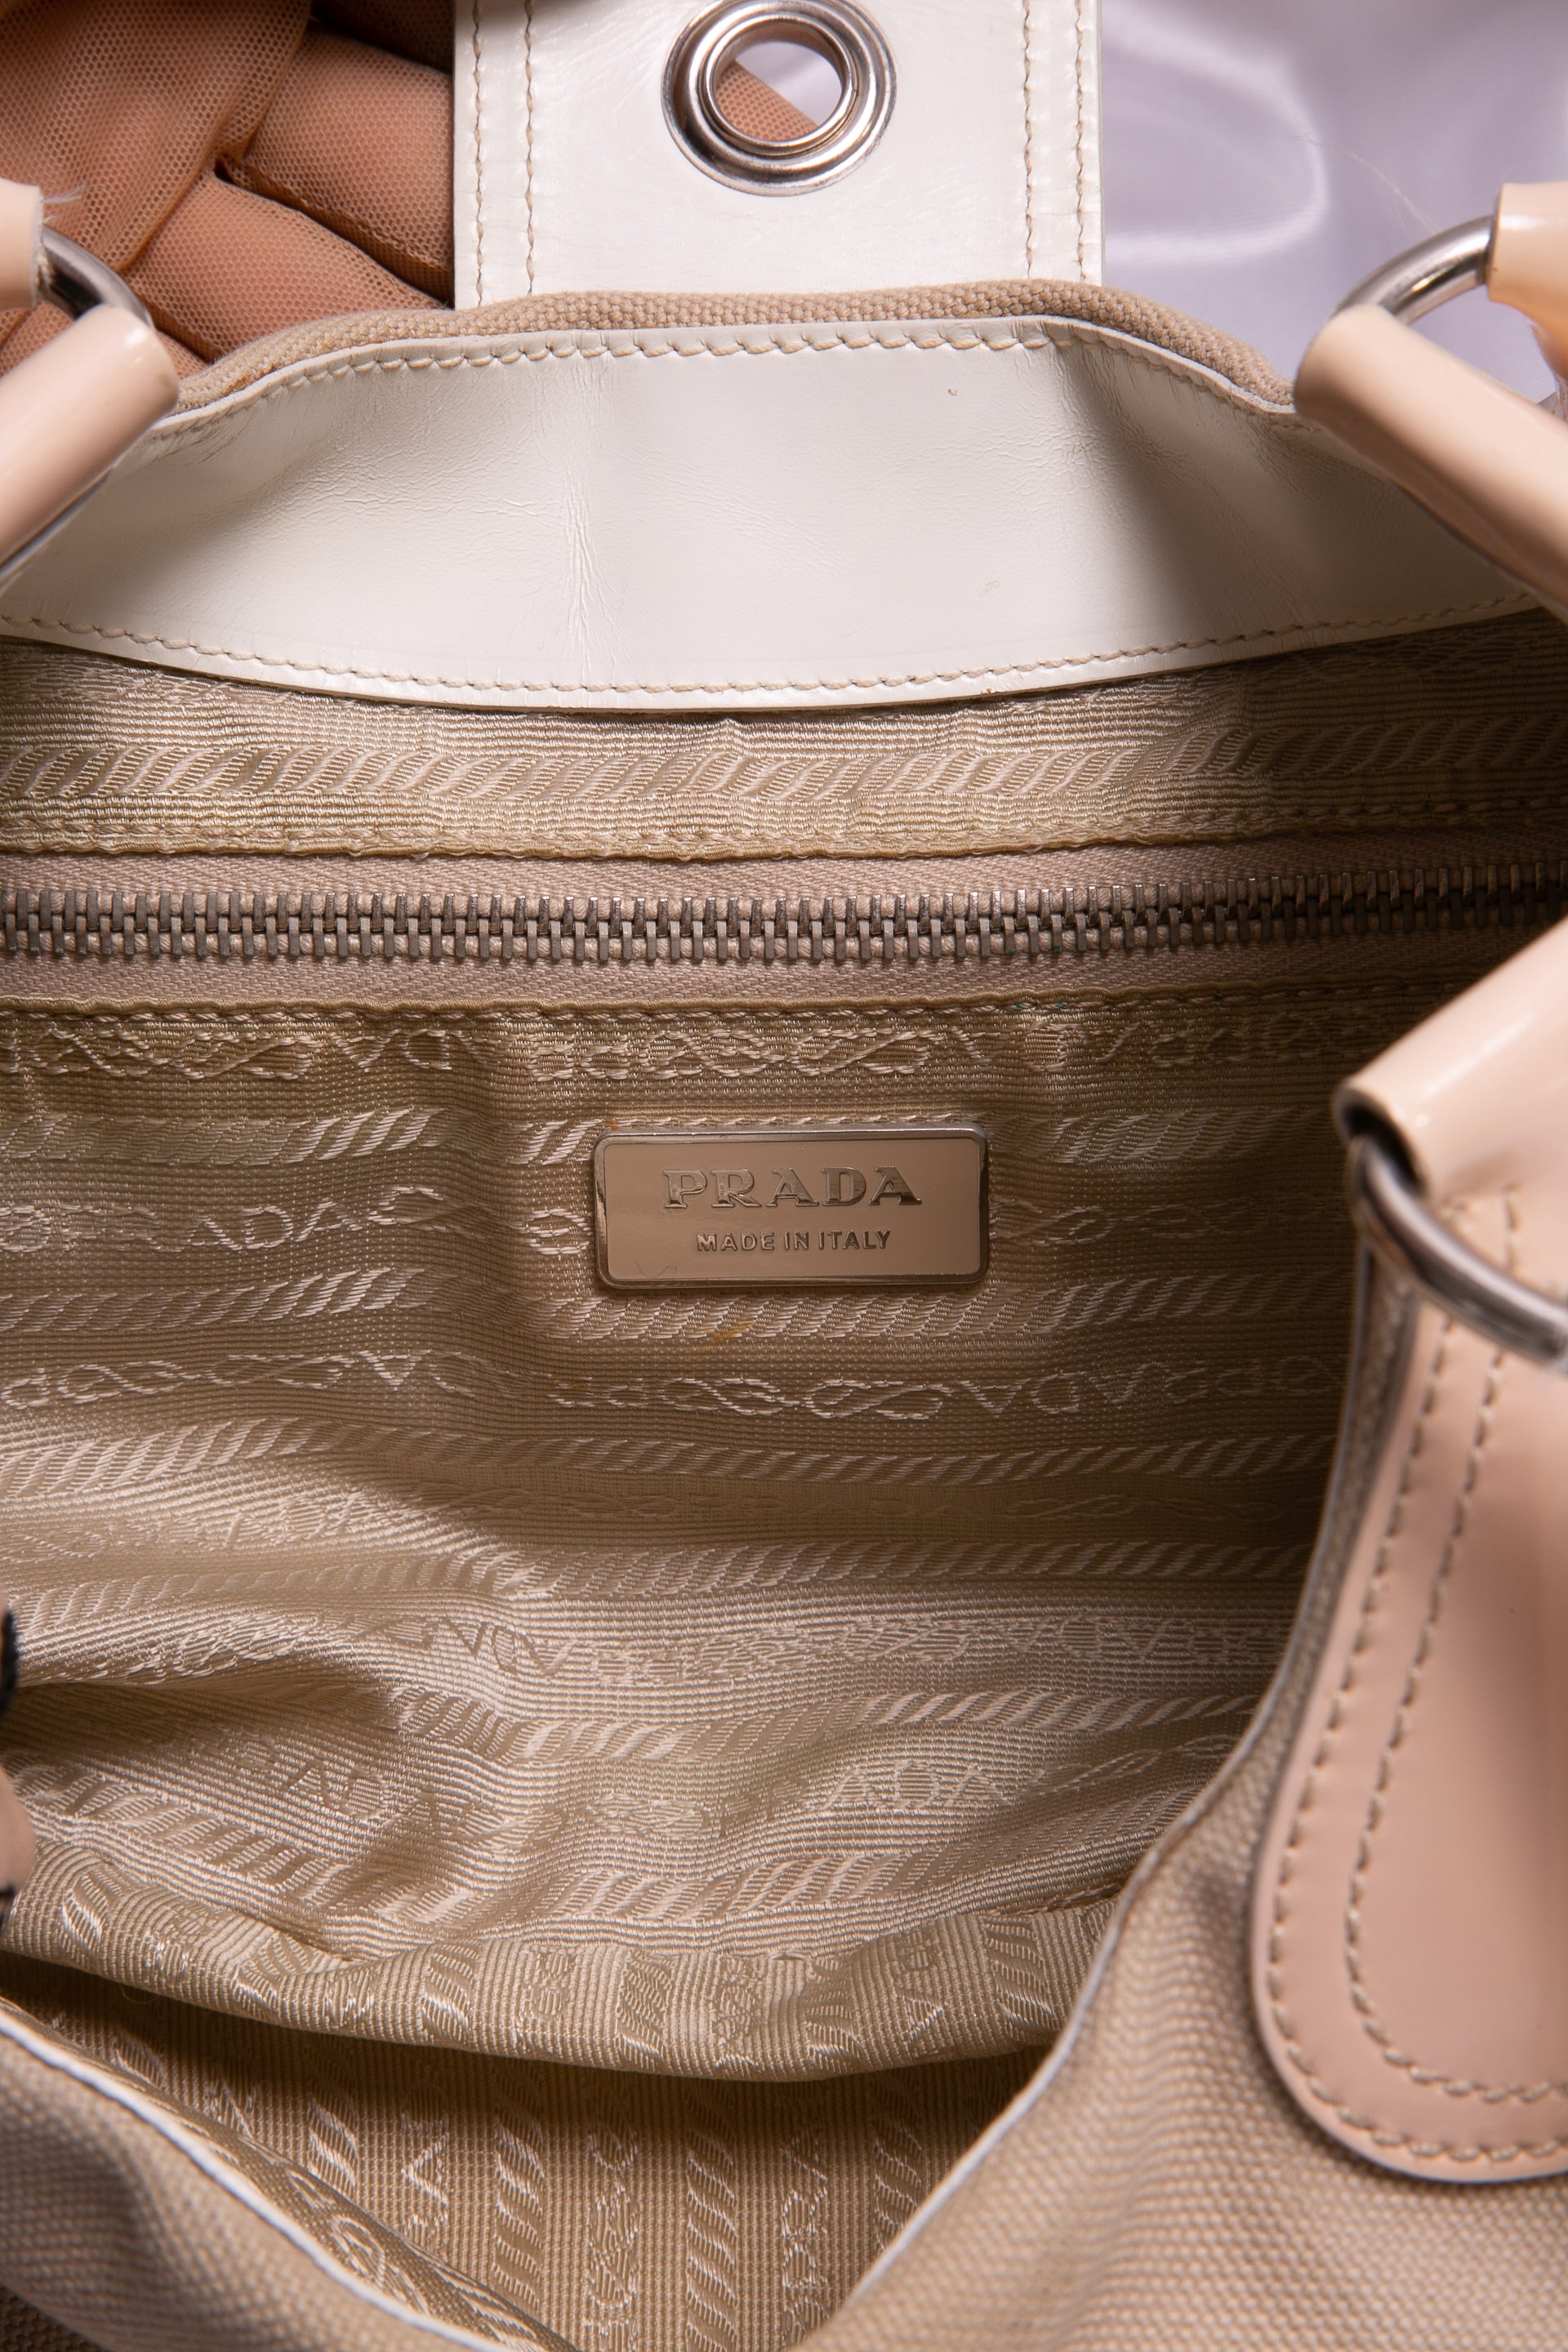 PRADA Vintage Logo Pochette Shoulder Bag Handbag Pink Beige 